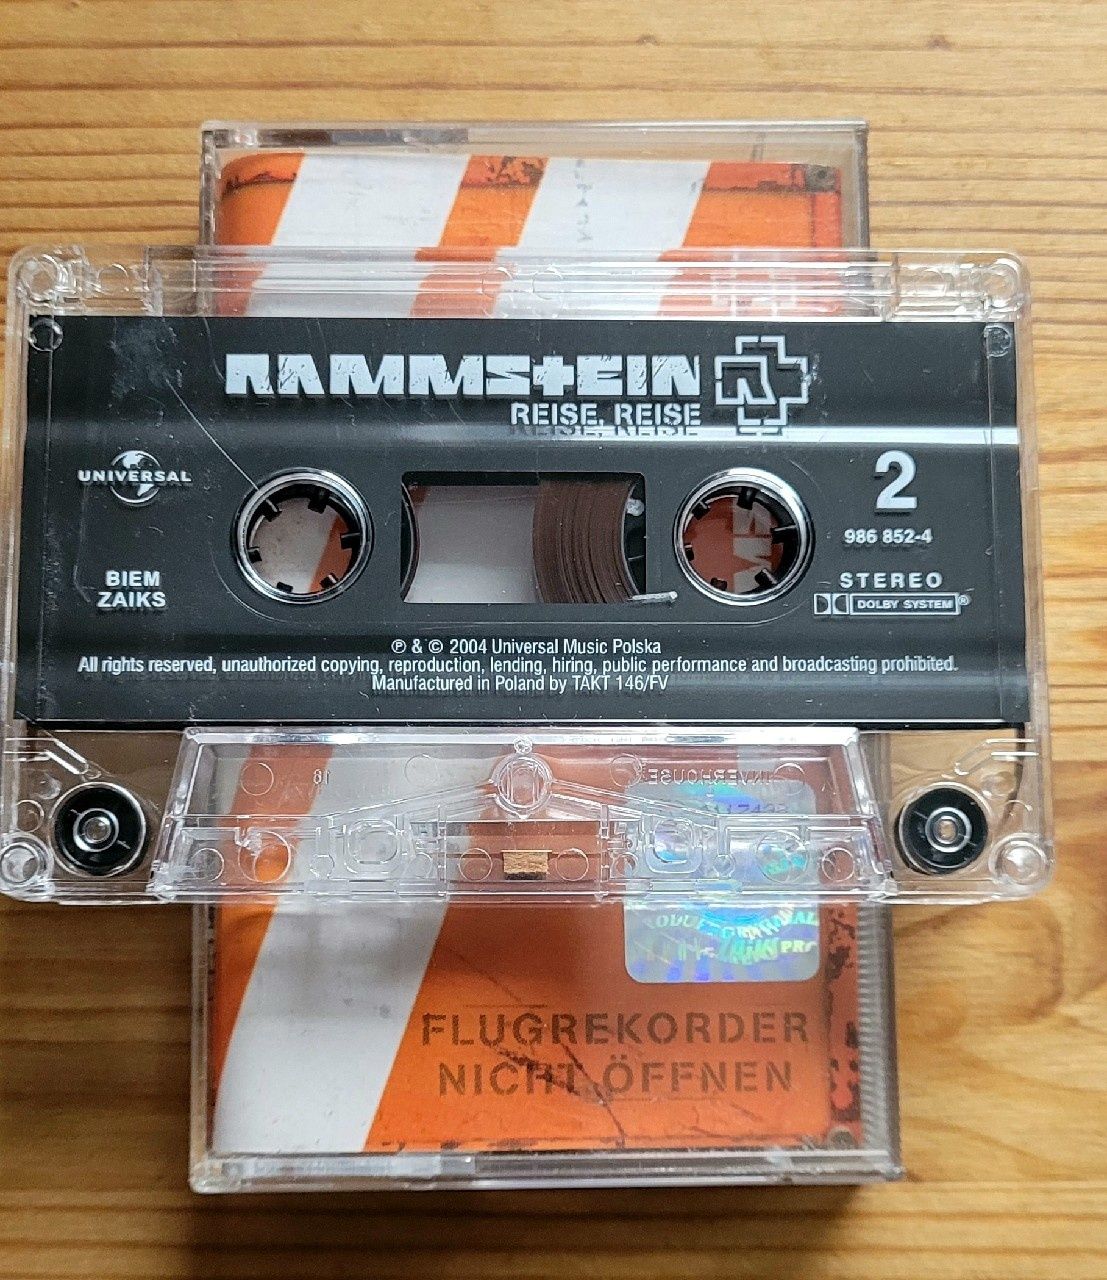 Rammstein - Reise, Reise kaseta magnetofonowa metal